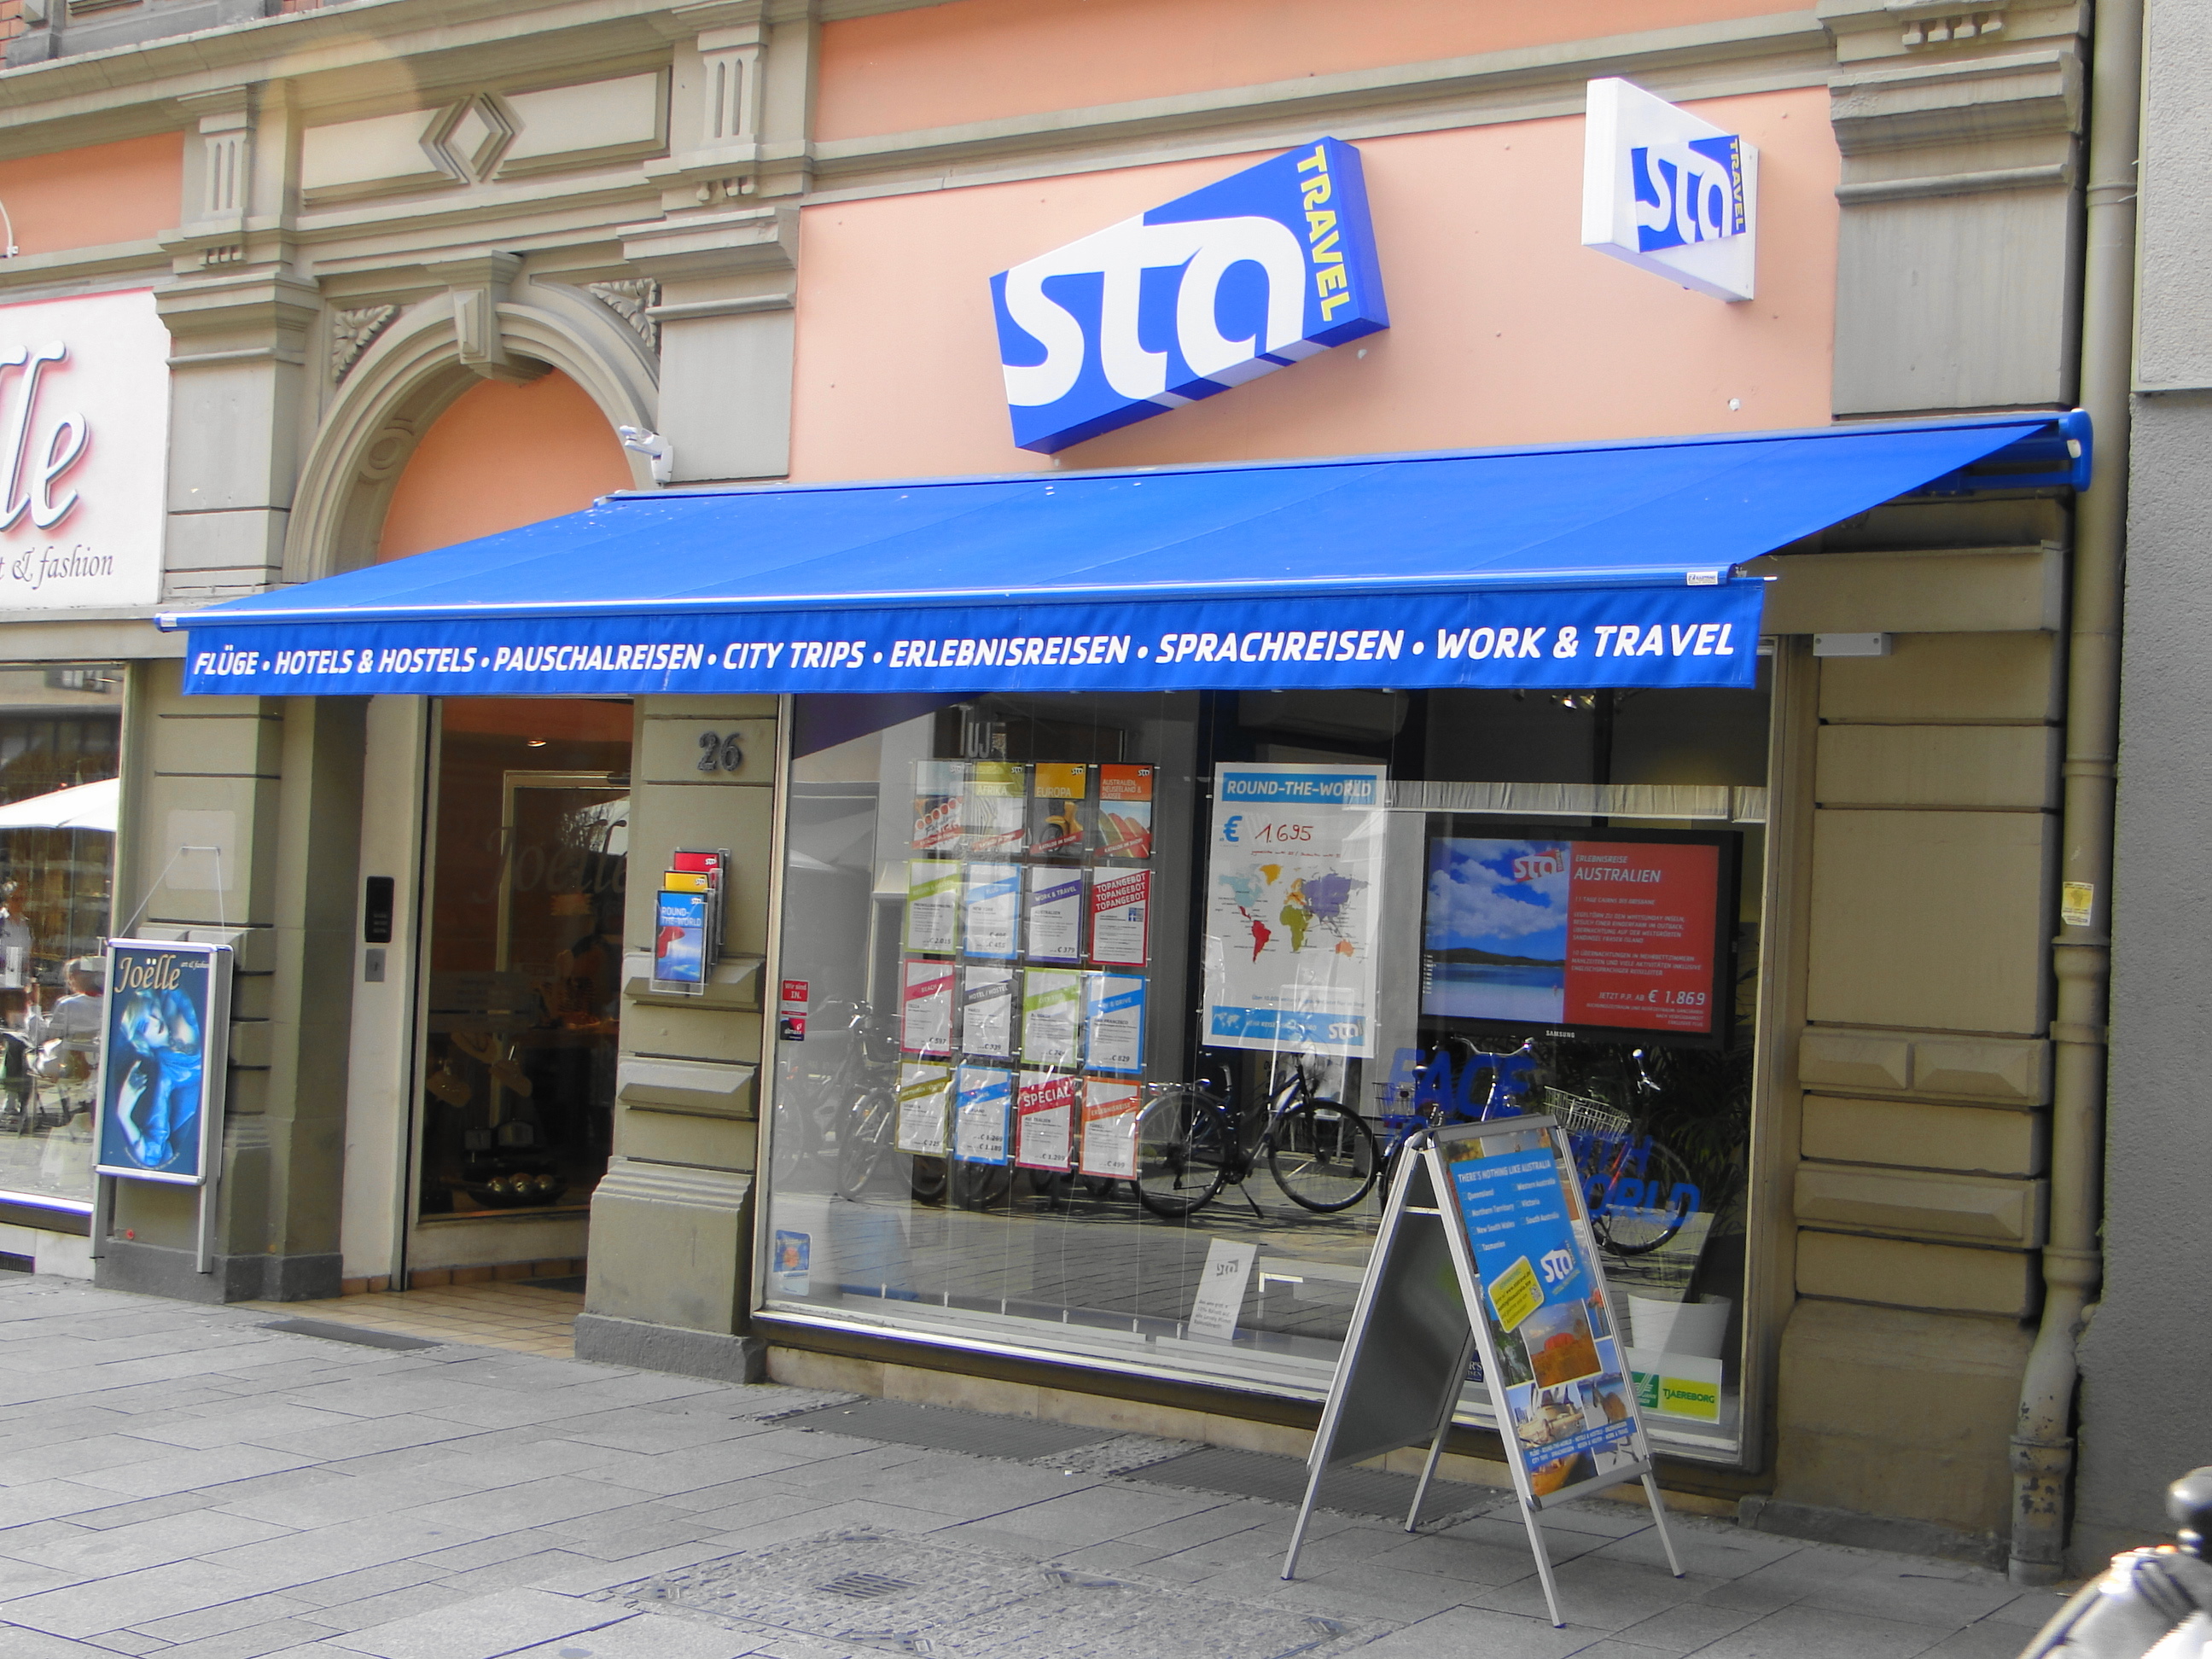 sta - Reisebüro in der Theaterstr. 26